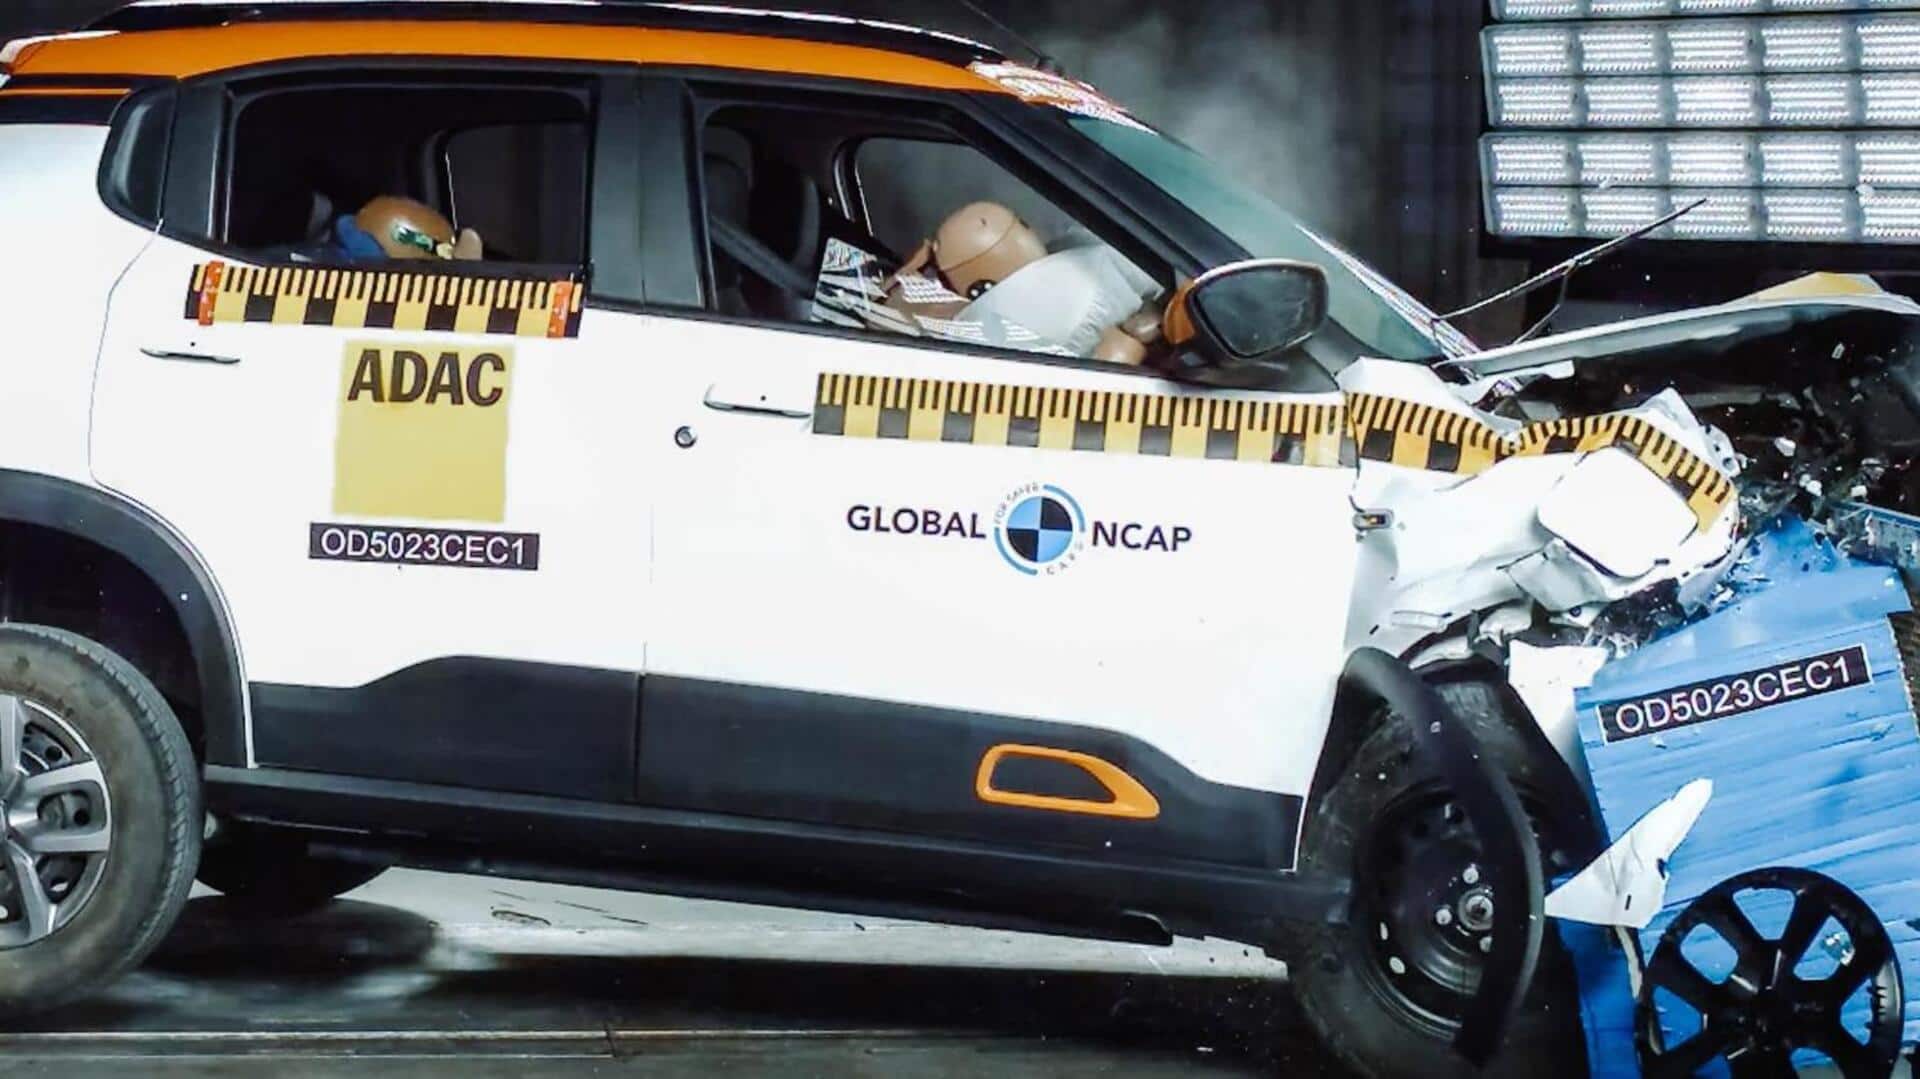 सिट्रॉन eC3 इलेक्ट्रिक हैचबैक को ग्लोबल NCAP में मिली जीरो रेटिंग, ऐसा रहा प्रदर्शन